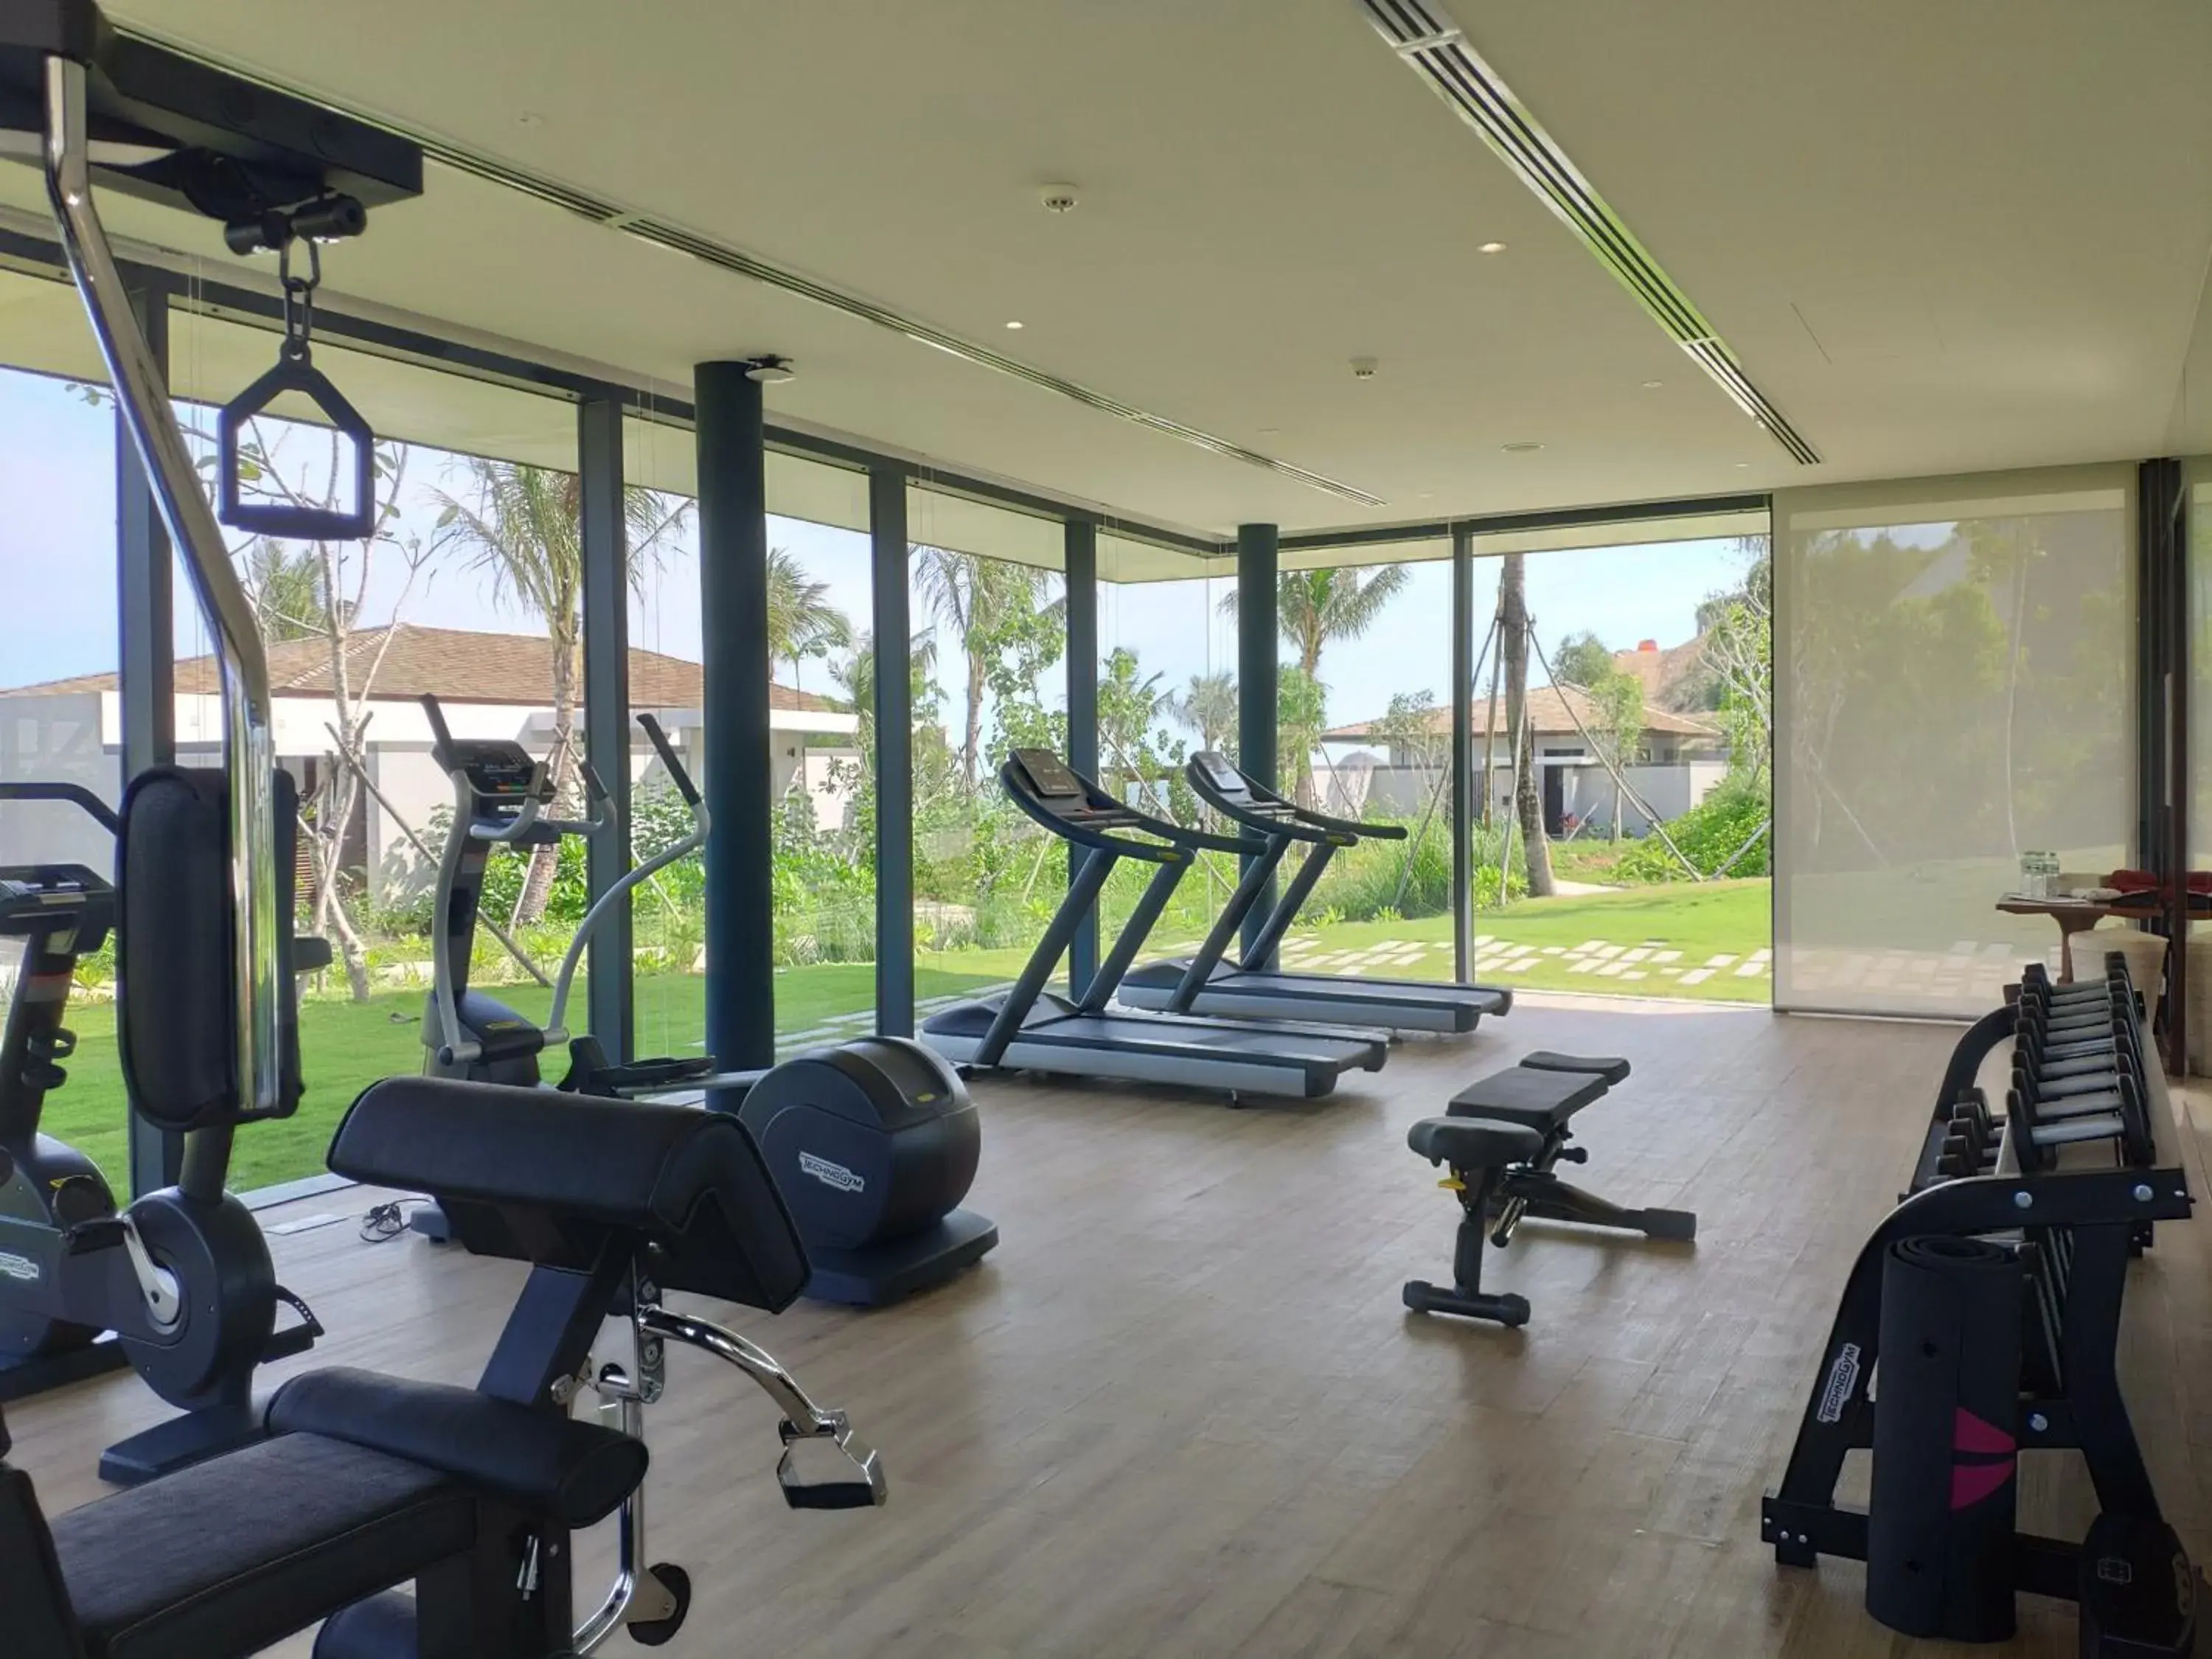 Fitness centre/facilities, Fitness Center/Facilities in Anantara Quy Nhon Villas